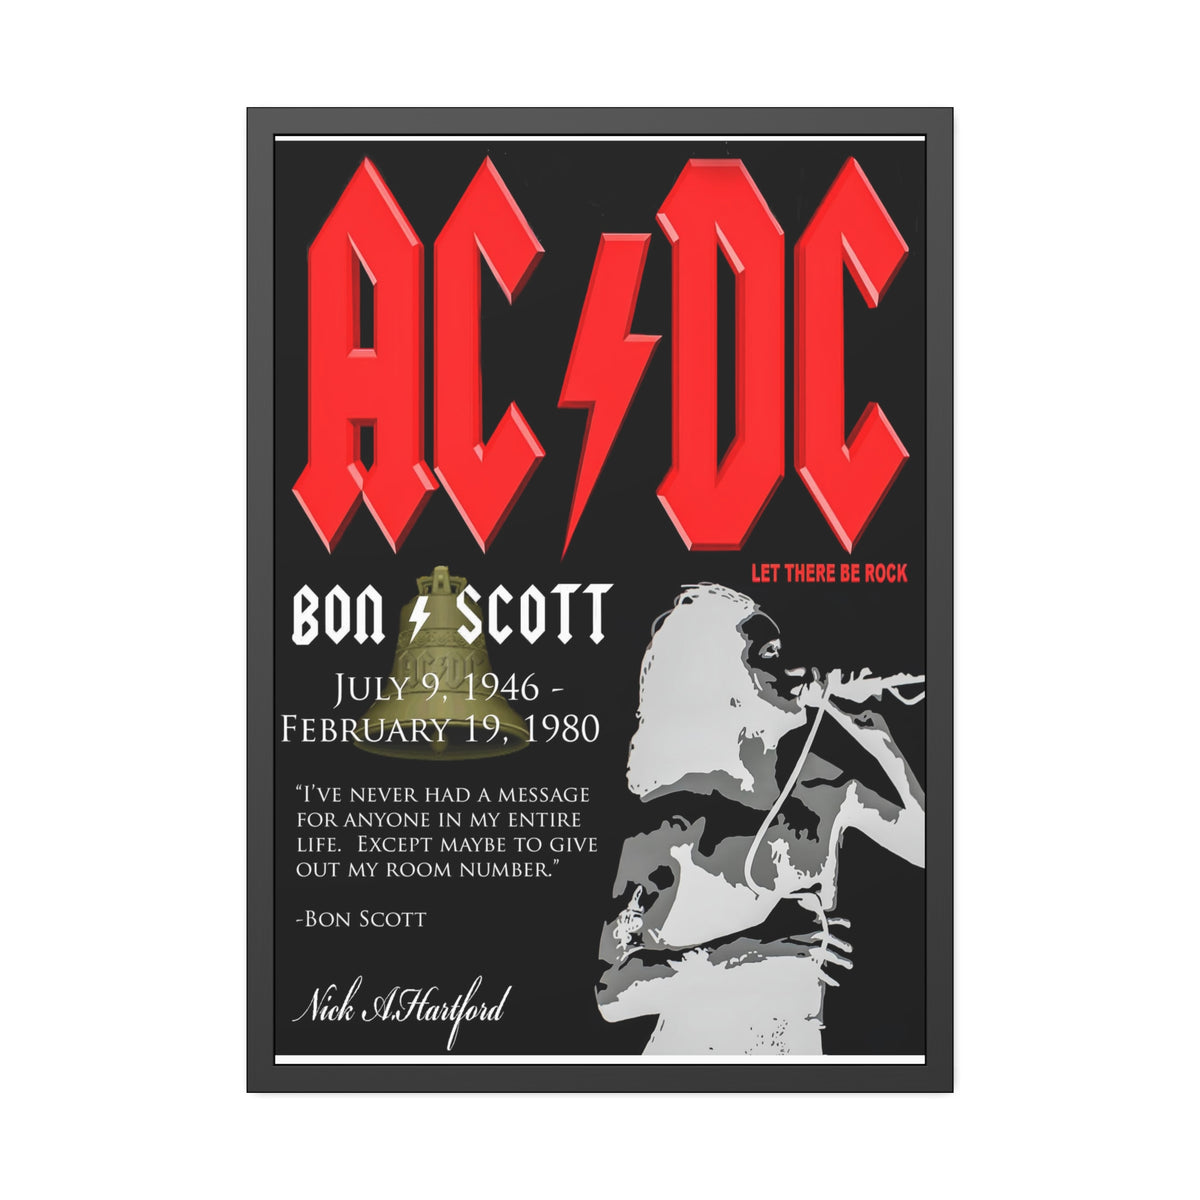 ACDC Concert Poster Art III